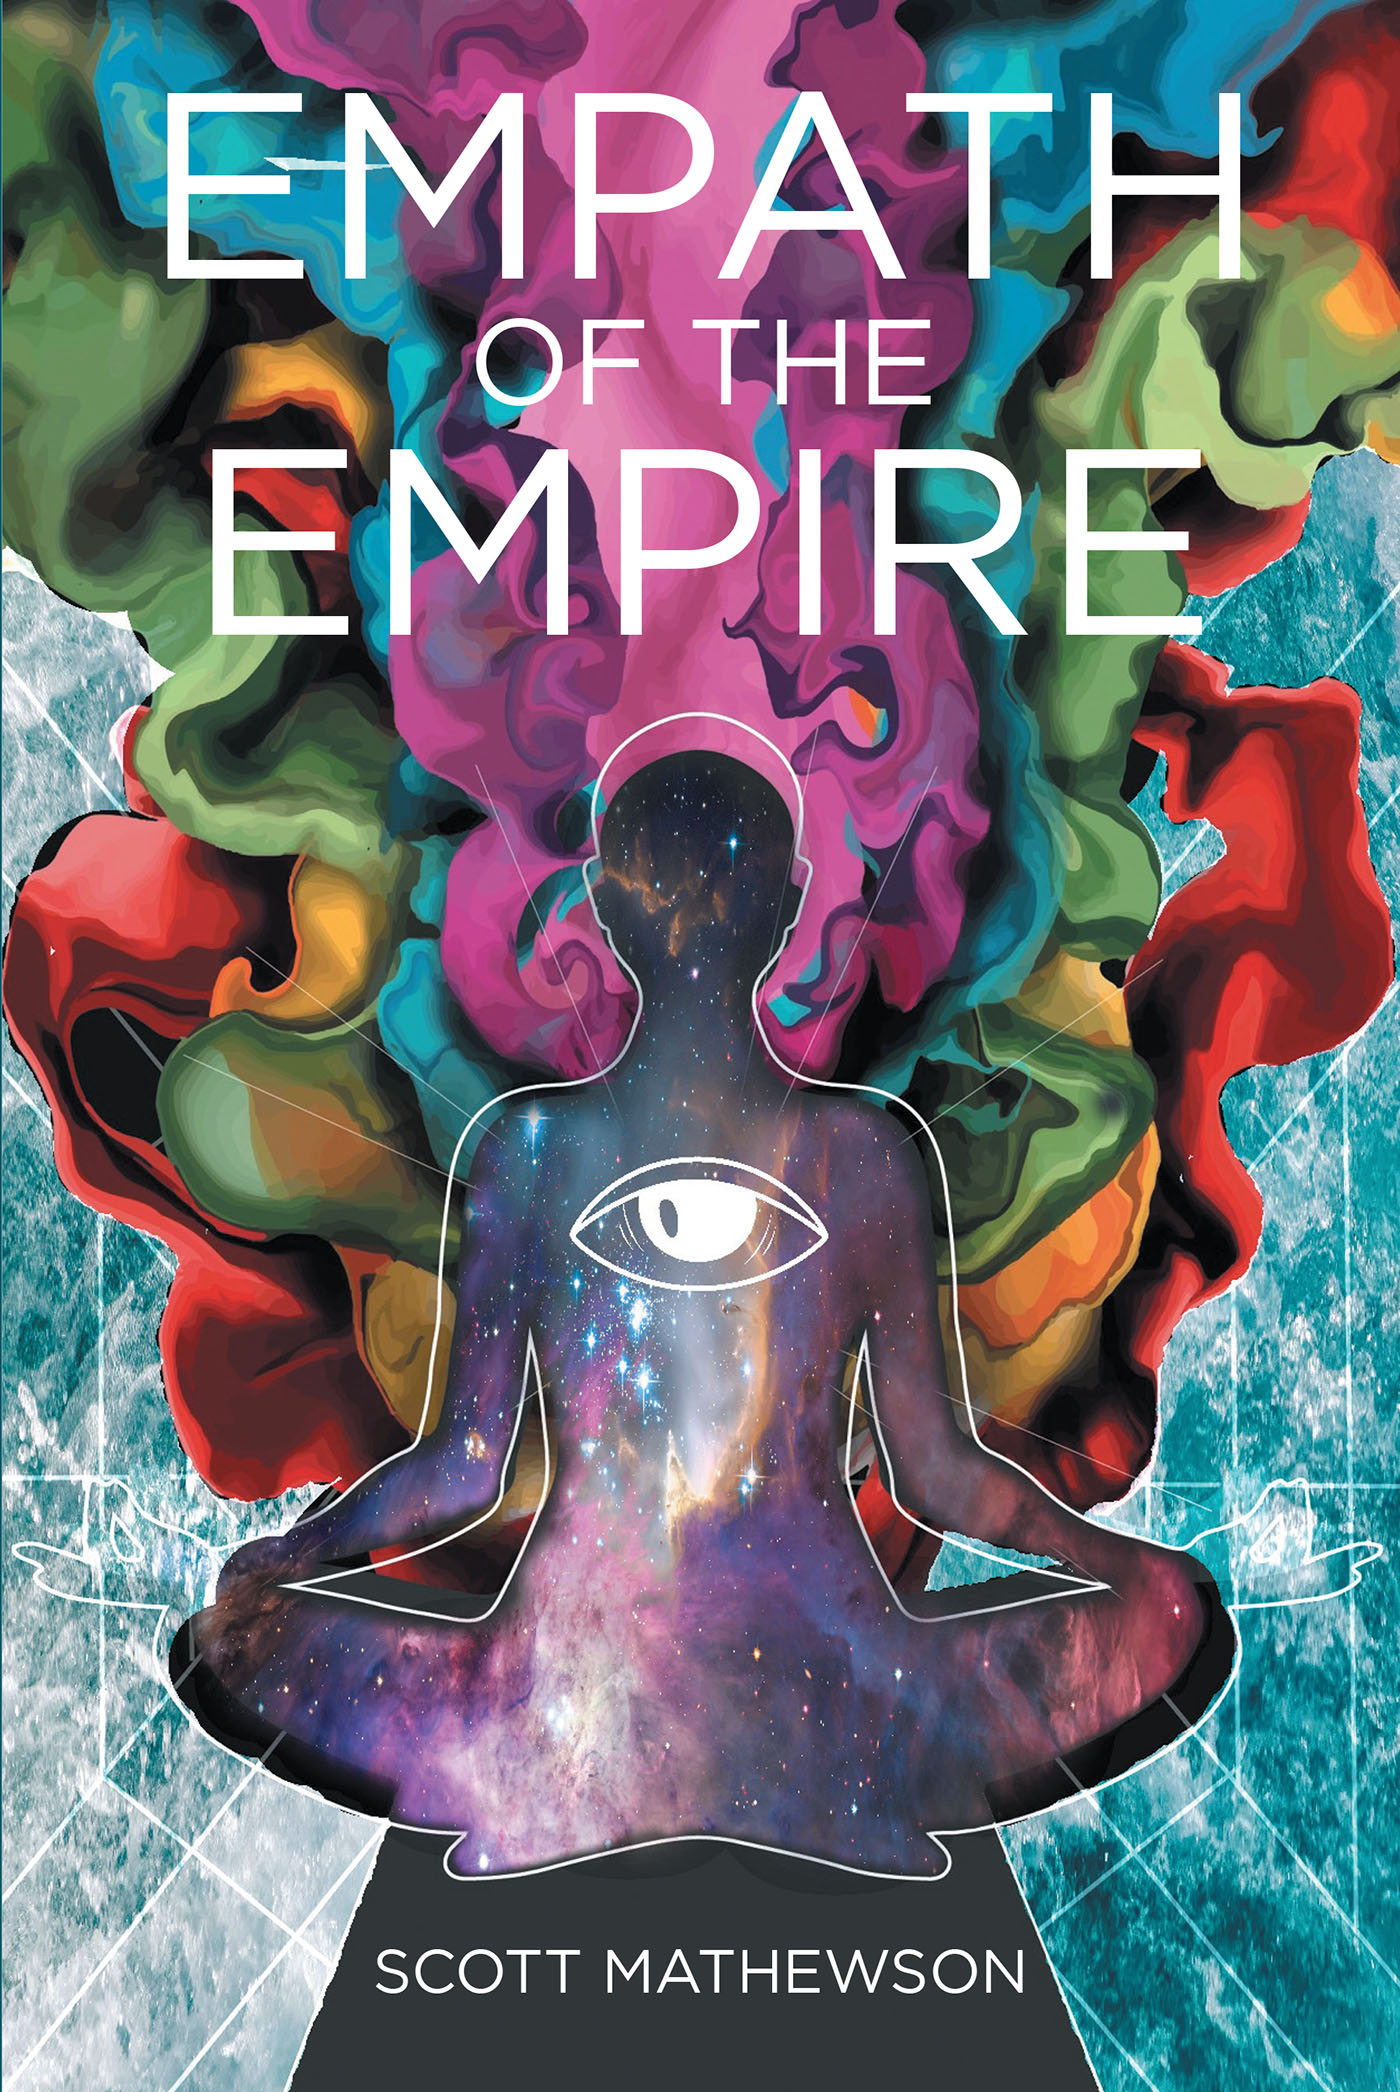 "Empath of The Empire," an Intriguingly Vulnerable Memoir by Scott Mathewson